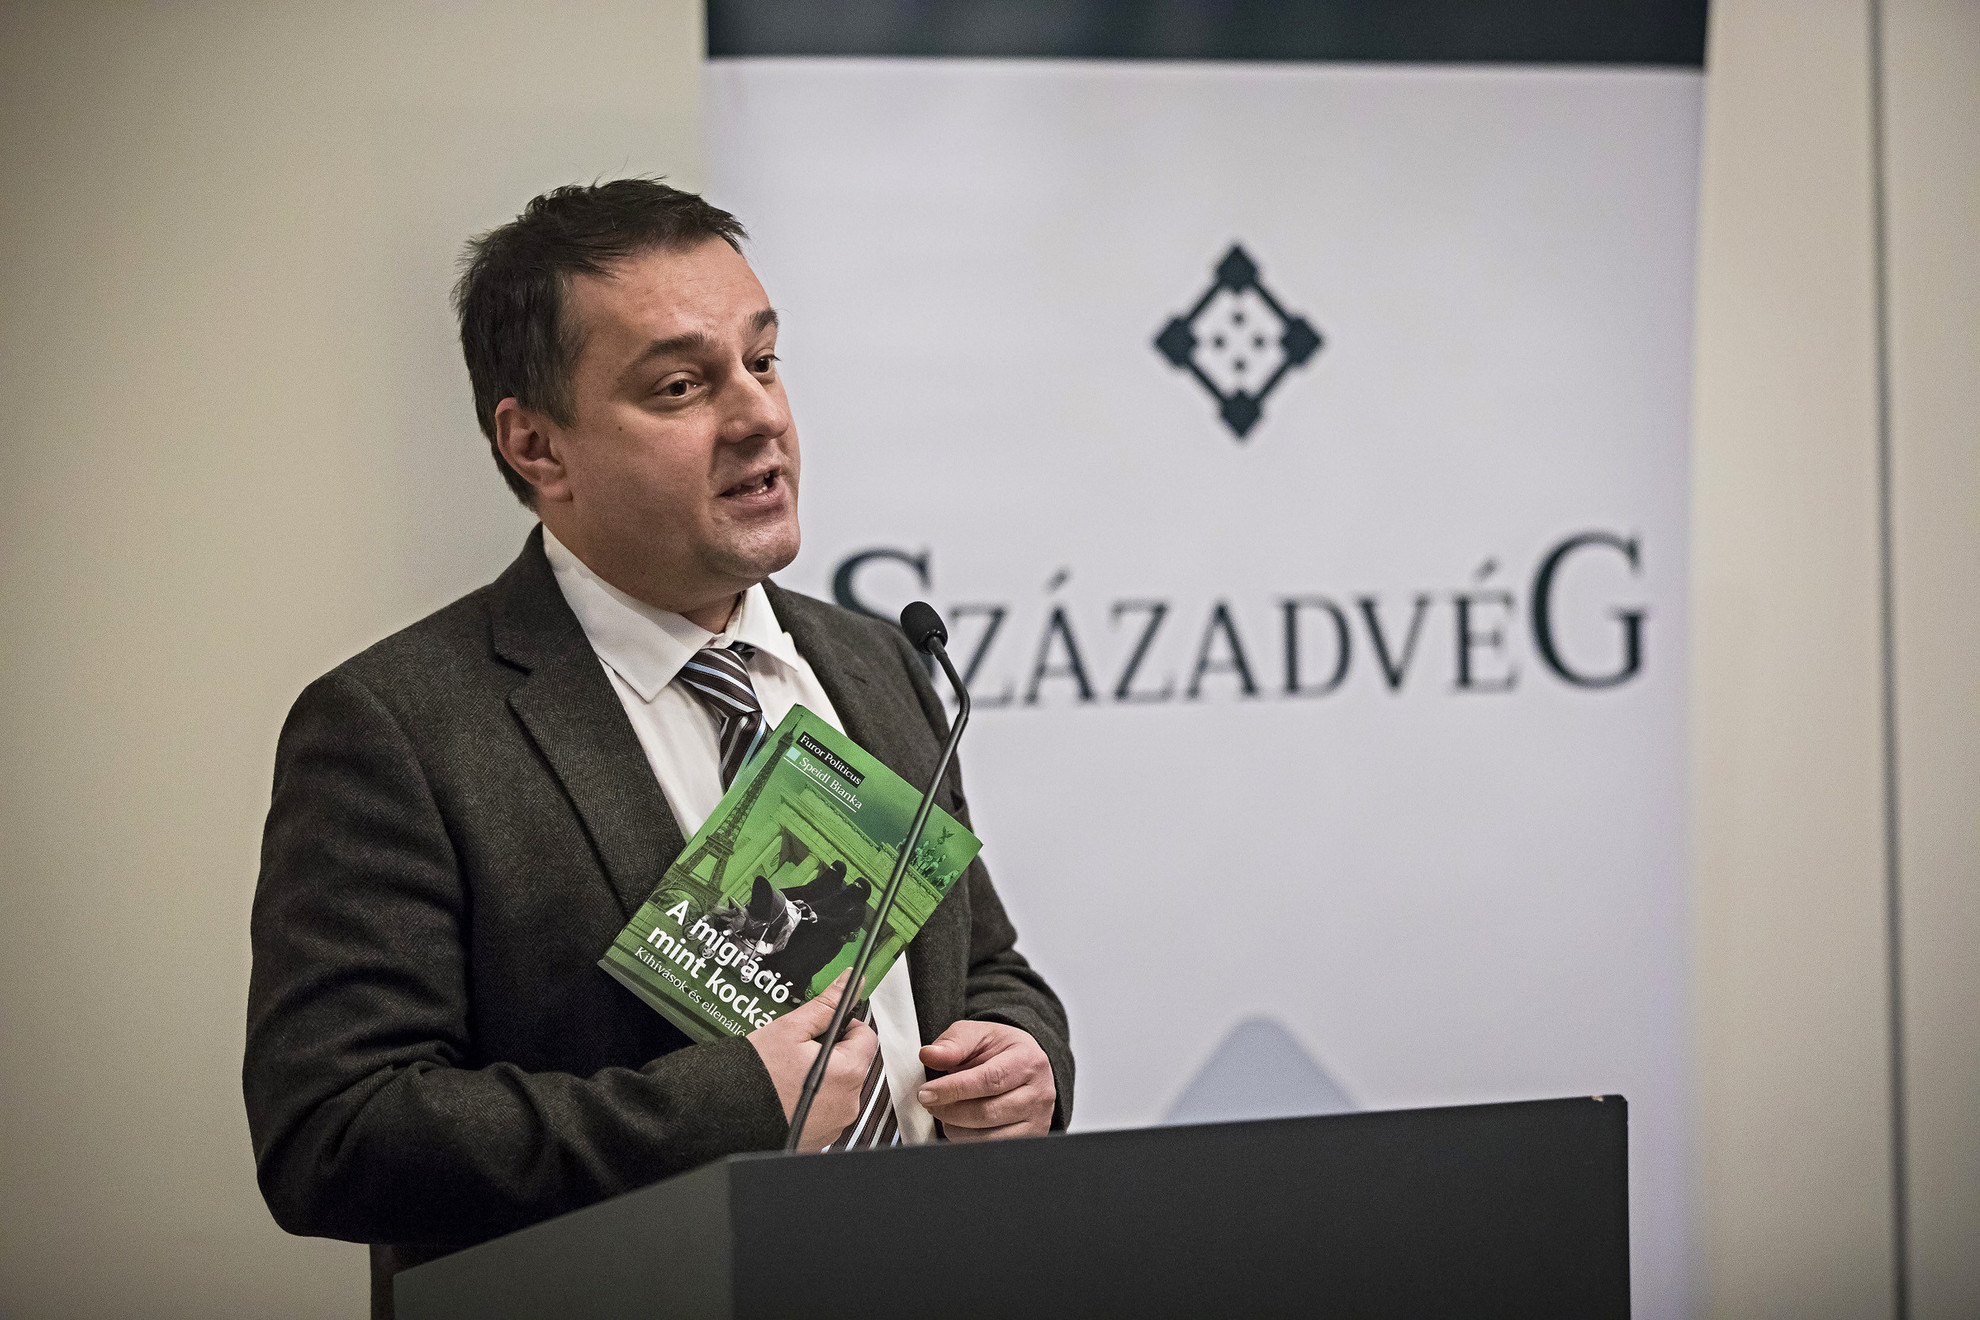 Kiszelly Zoltán, a Századvég Politikai Elemzések Központjának igazgatója